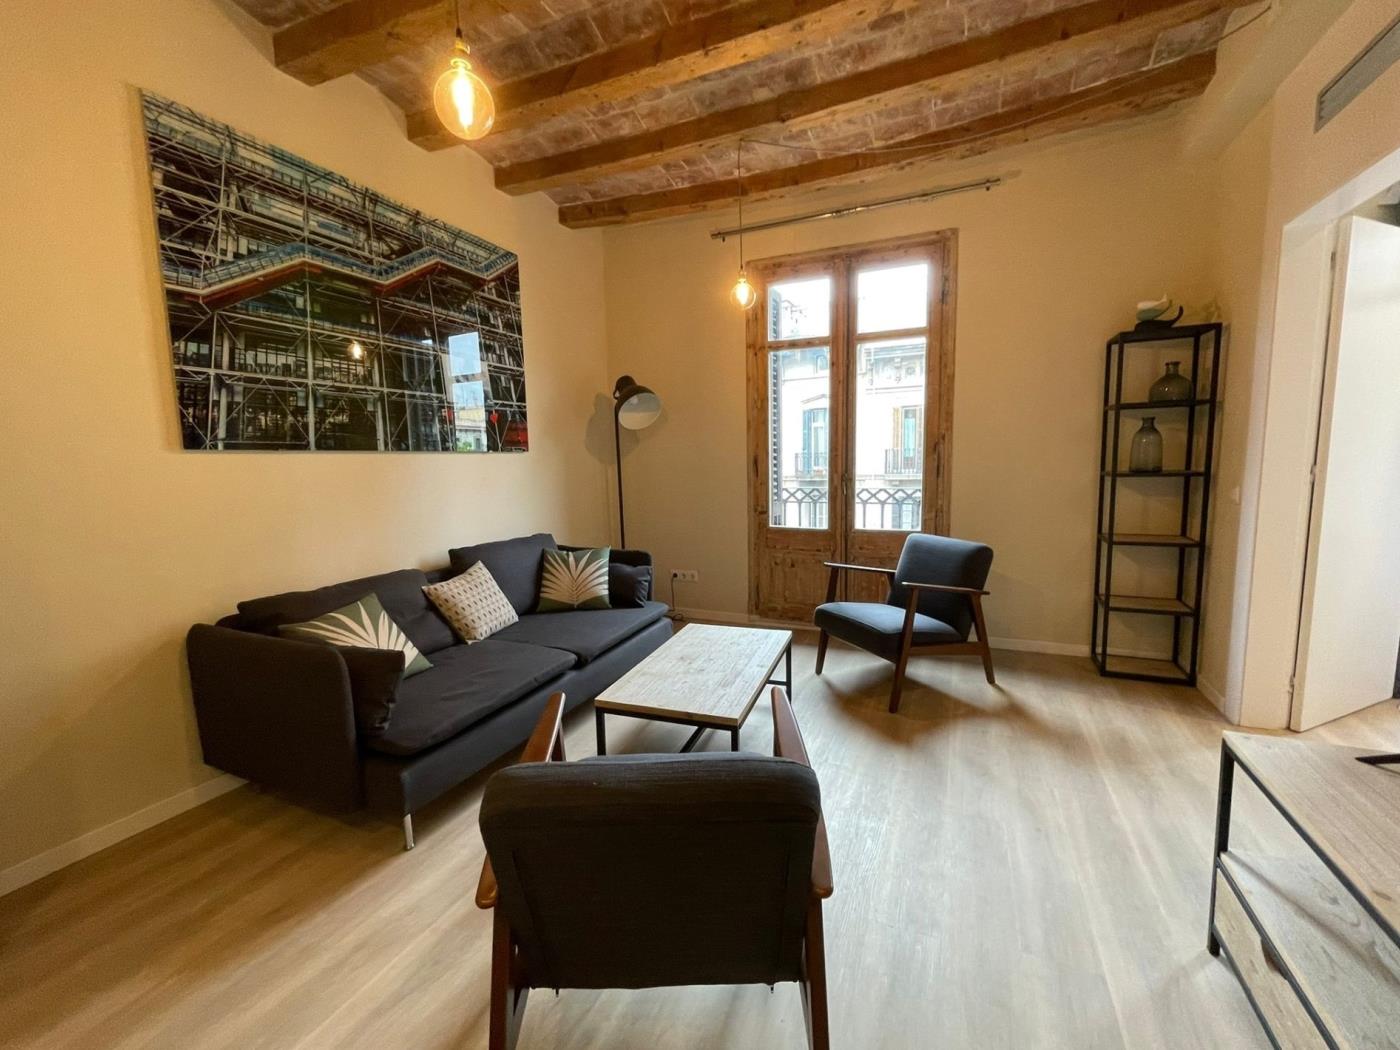 Appartement de 60 m² idéal pour 3 personnes dans un immeuble moderniste - My Space Barcelona Appartements